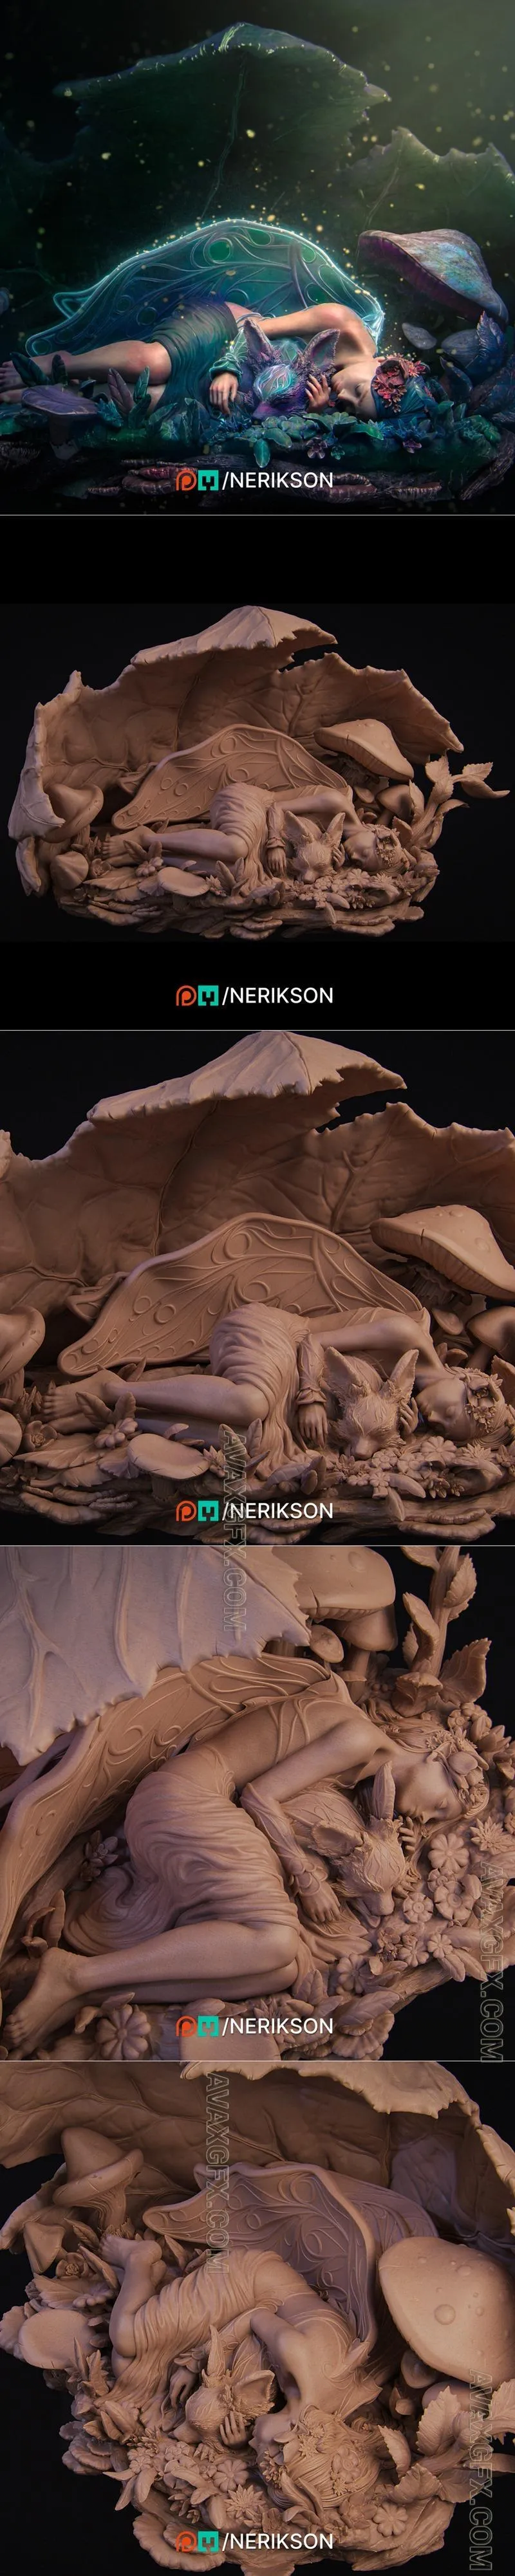 Nerikson - End of Summer - STL 3D Model